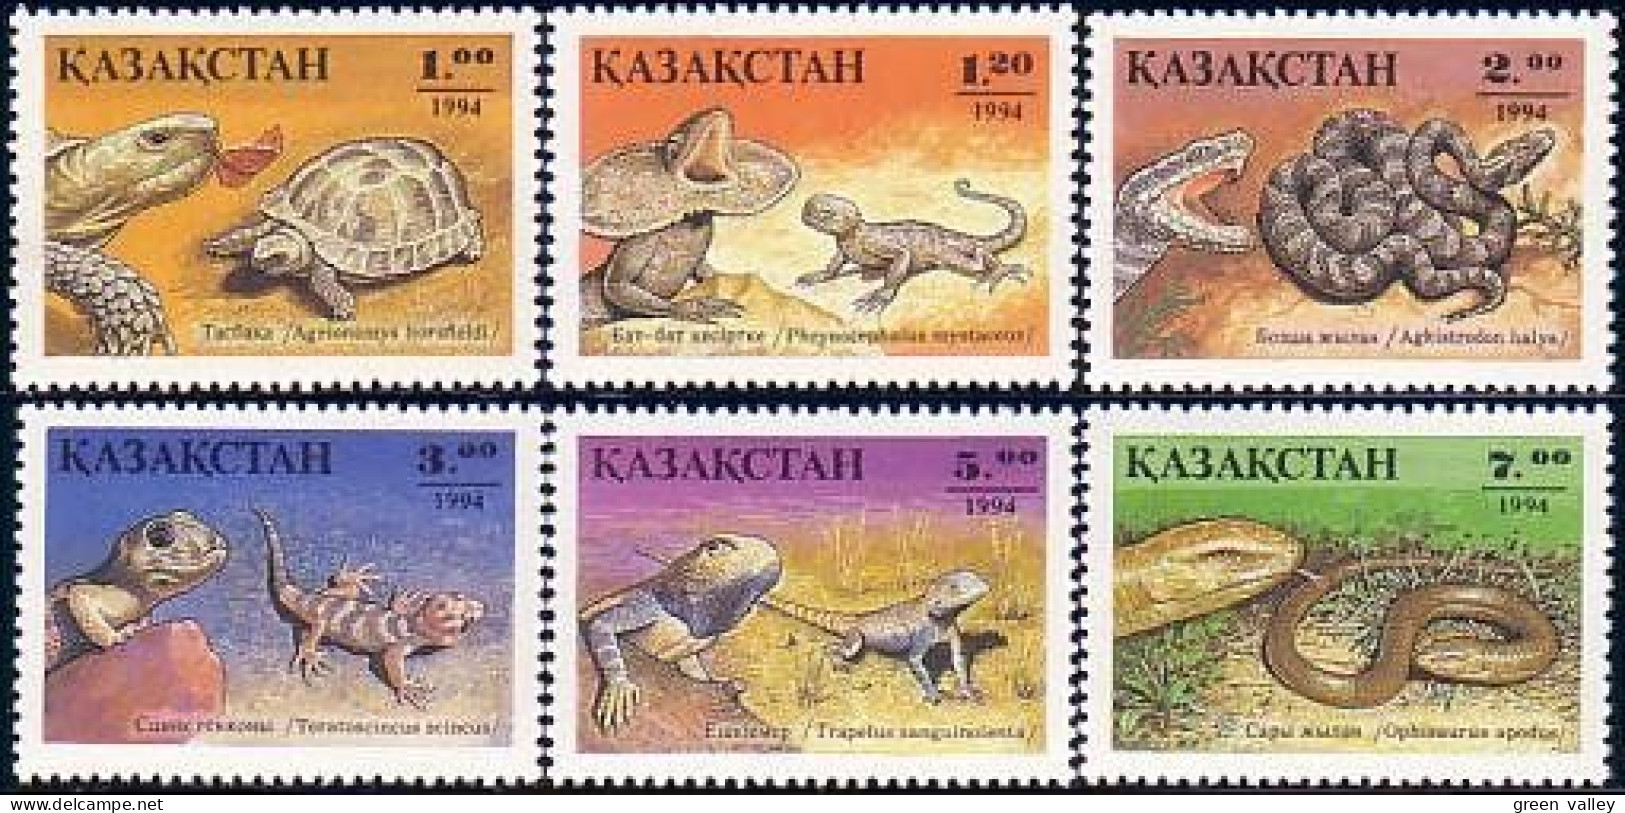 538 Kazakhstan Reptiles Tortues Turtles Schildkrote MNH ** Neuf SC (KAZ-1a) - Kazakhstan